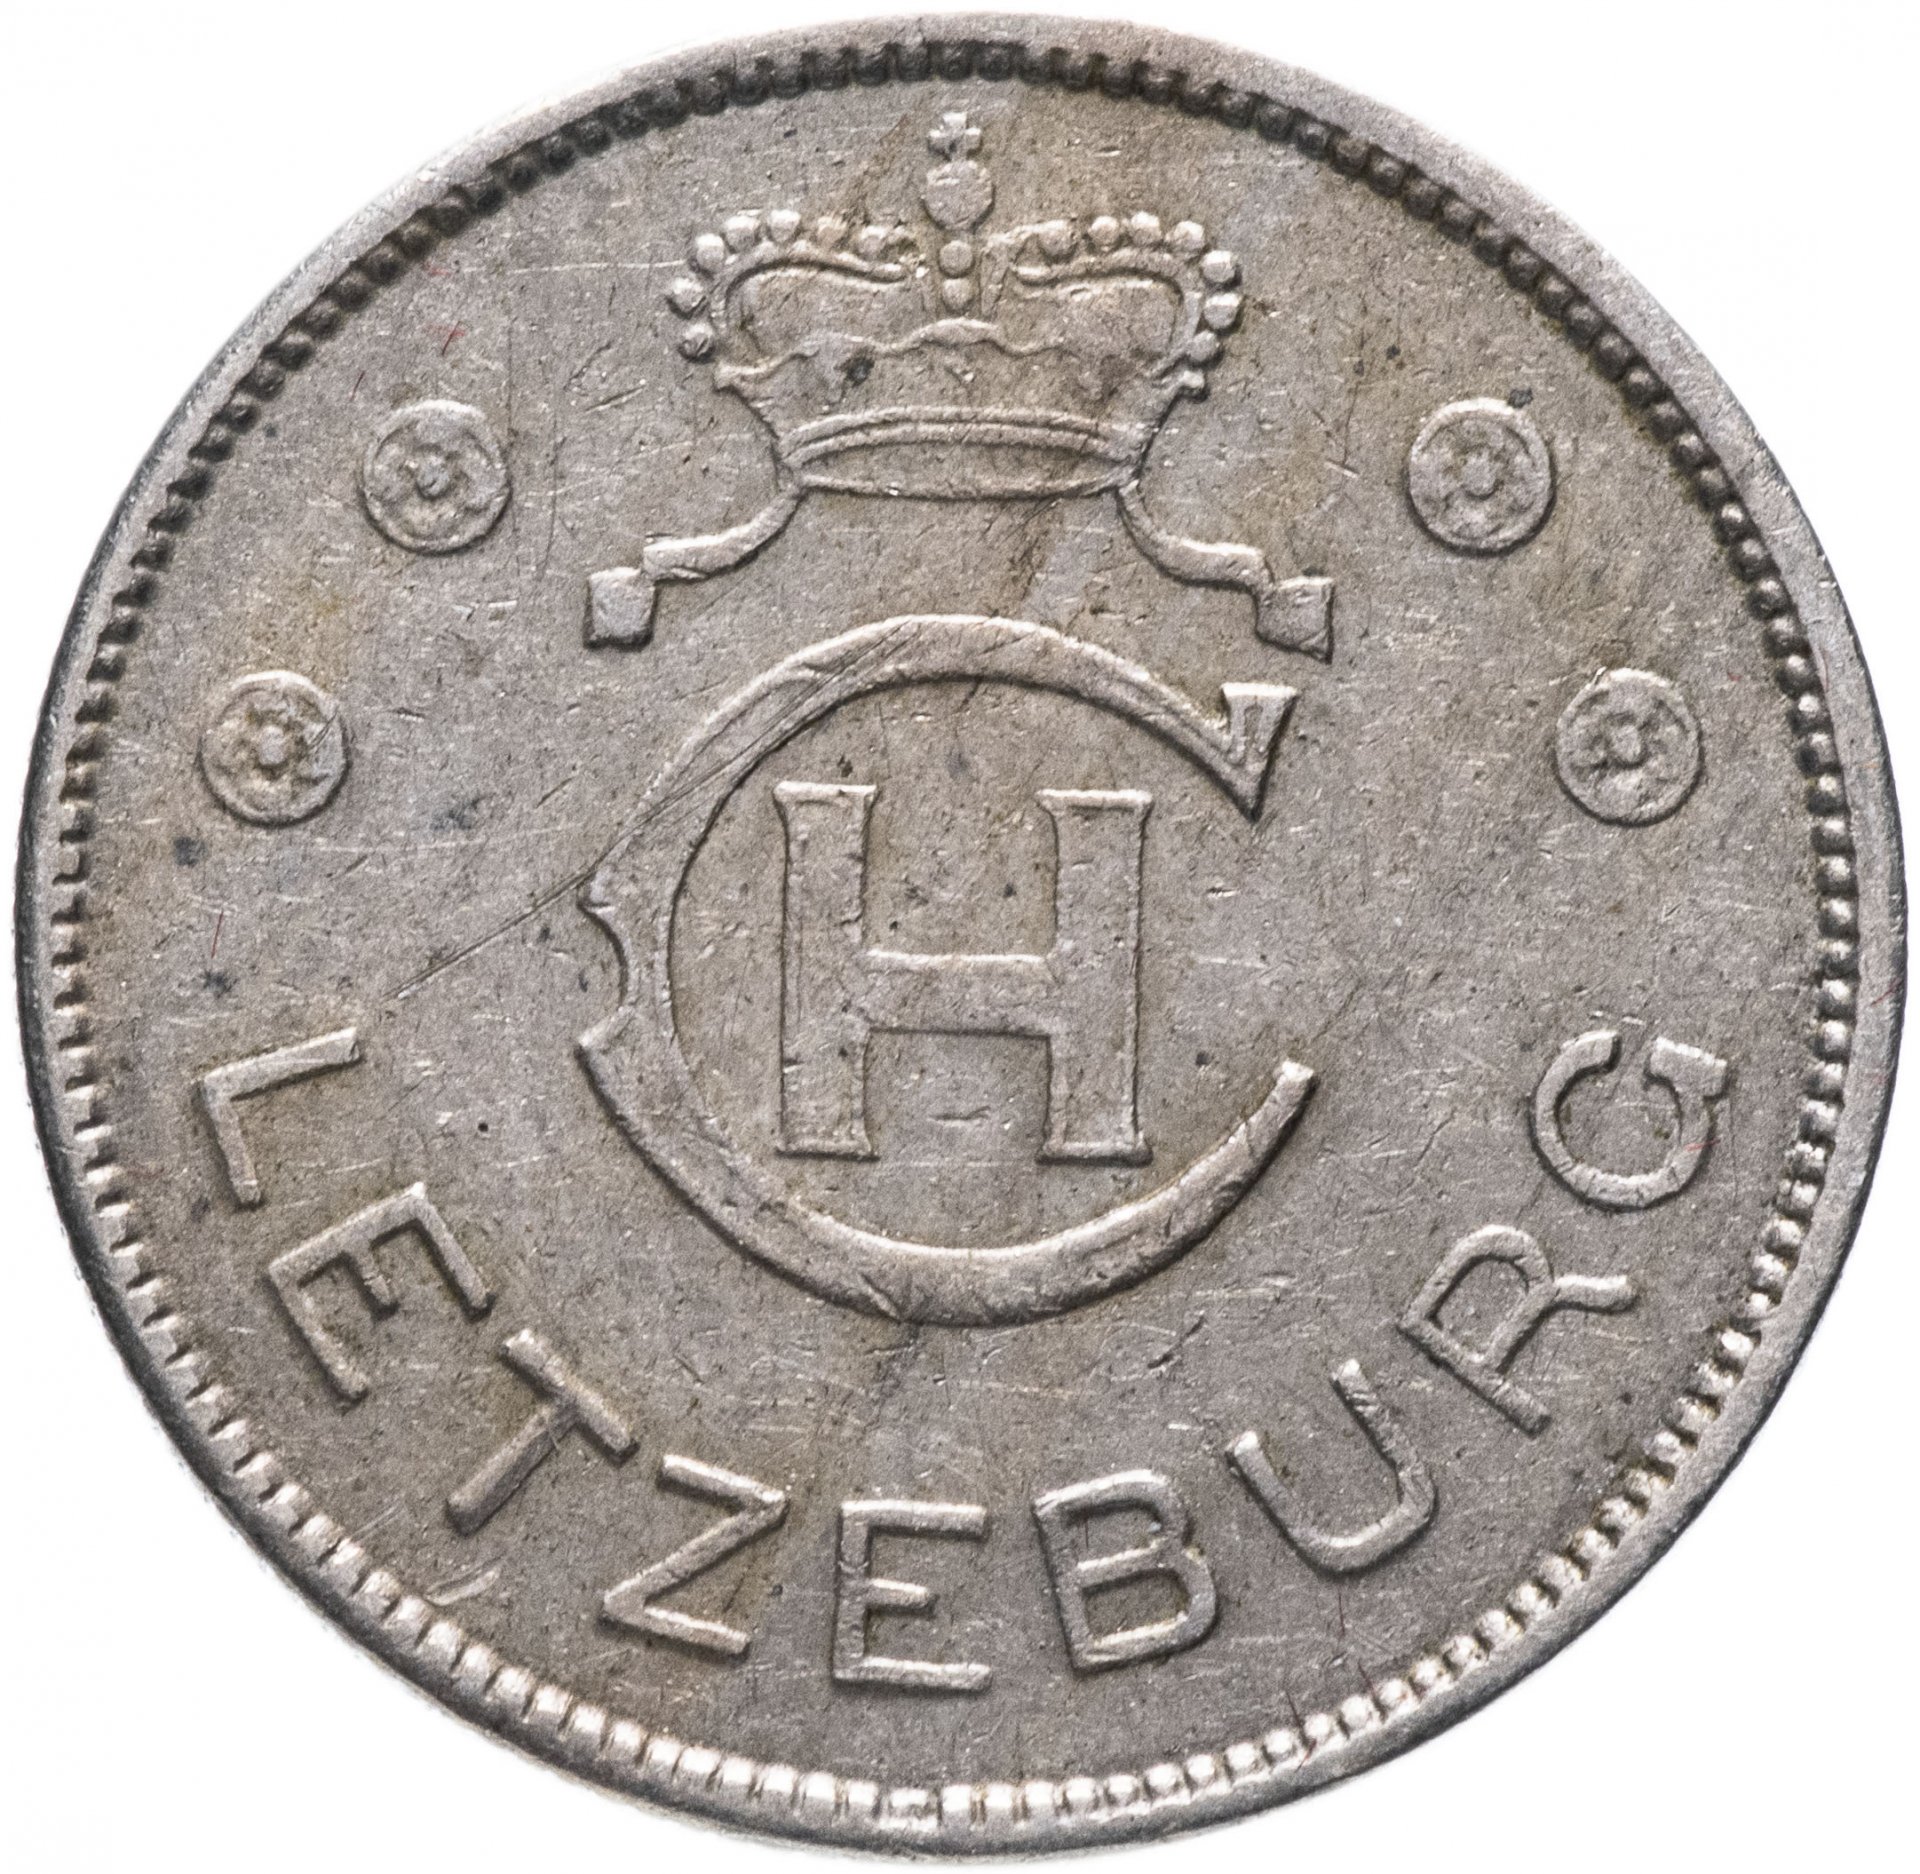 Монета 1939 года. 1 Франк 1939. Немецкие монеты 1939 г. Монета немецкая СС 1939г. Люксембург 1 Франк, 1939.